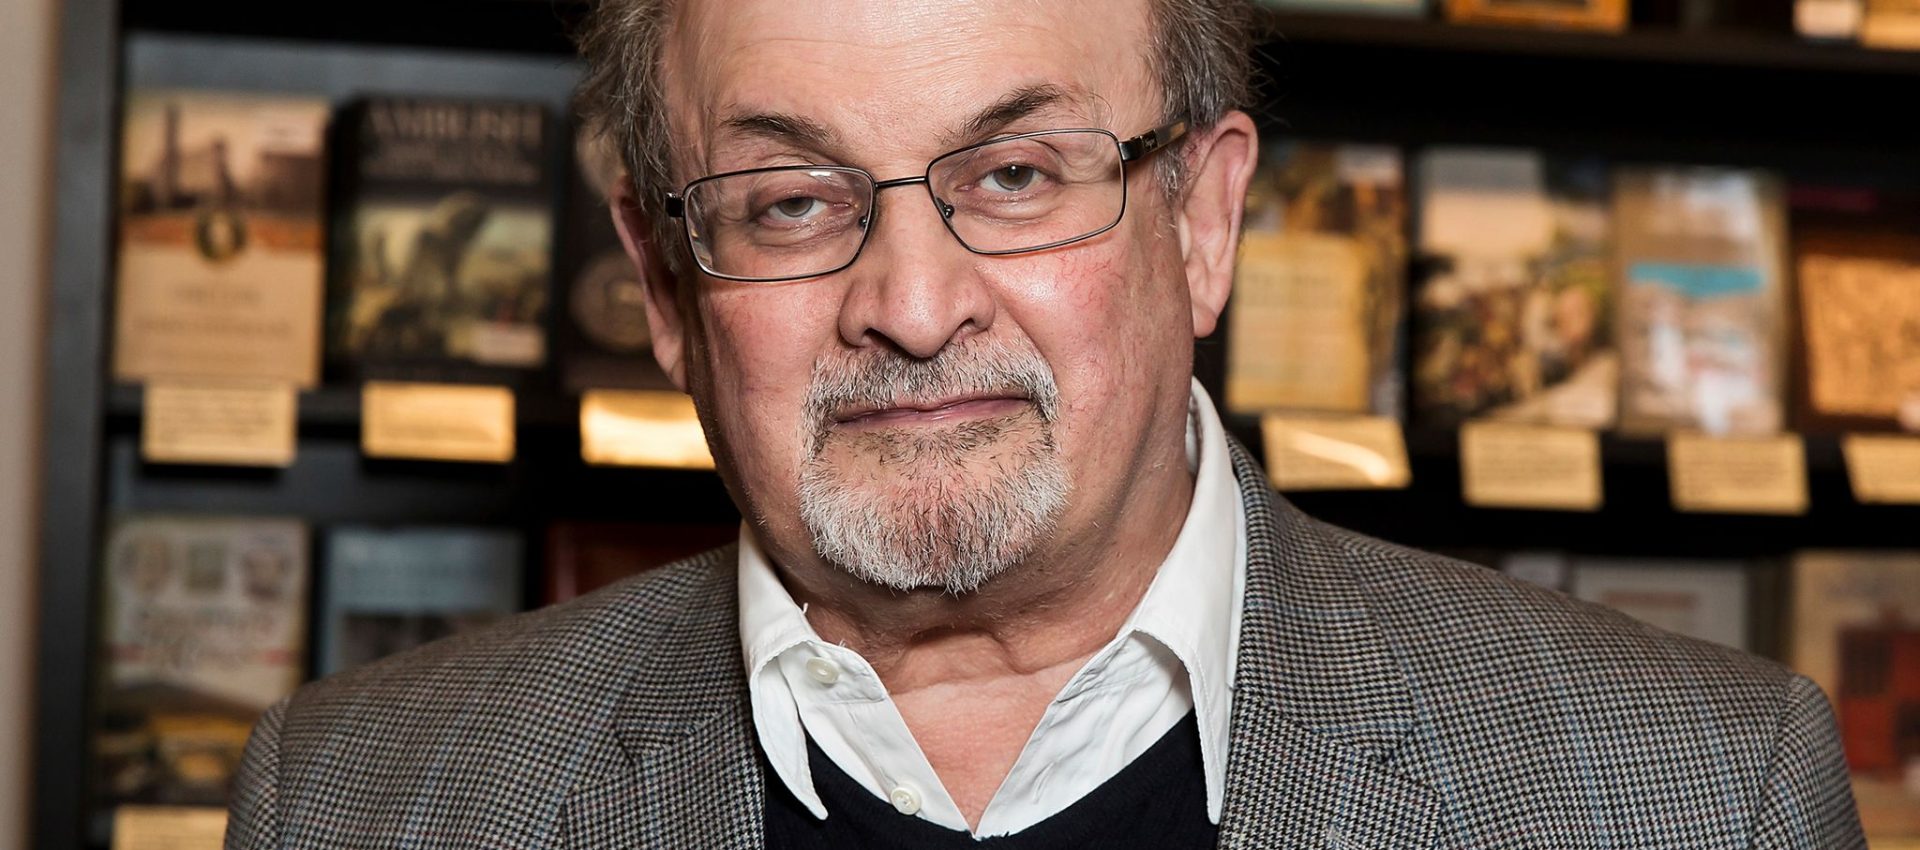 Salman Rushdie nach Attacke auf dem Weg der Besserung